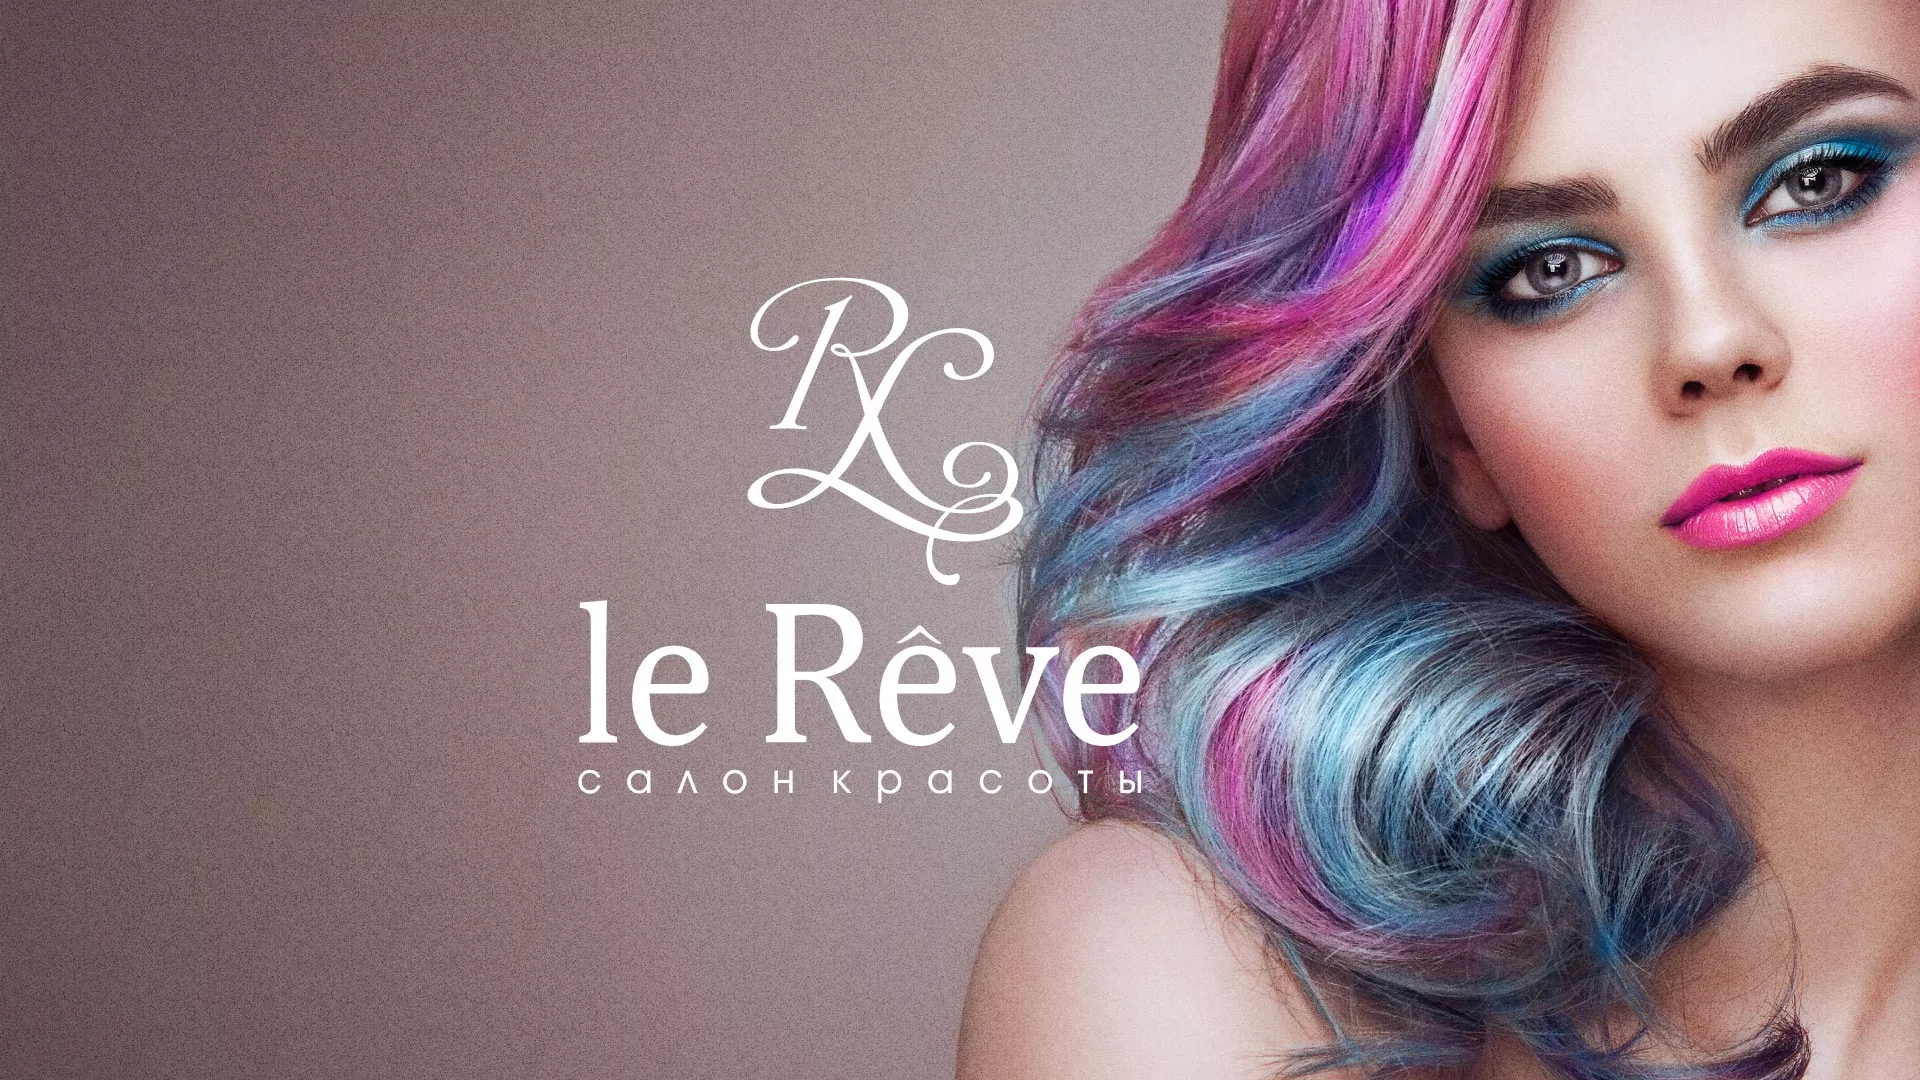 Создание сайта для салона красоты «Le Reve» в Харовске